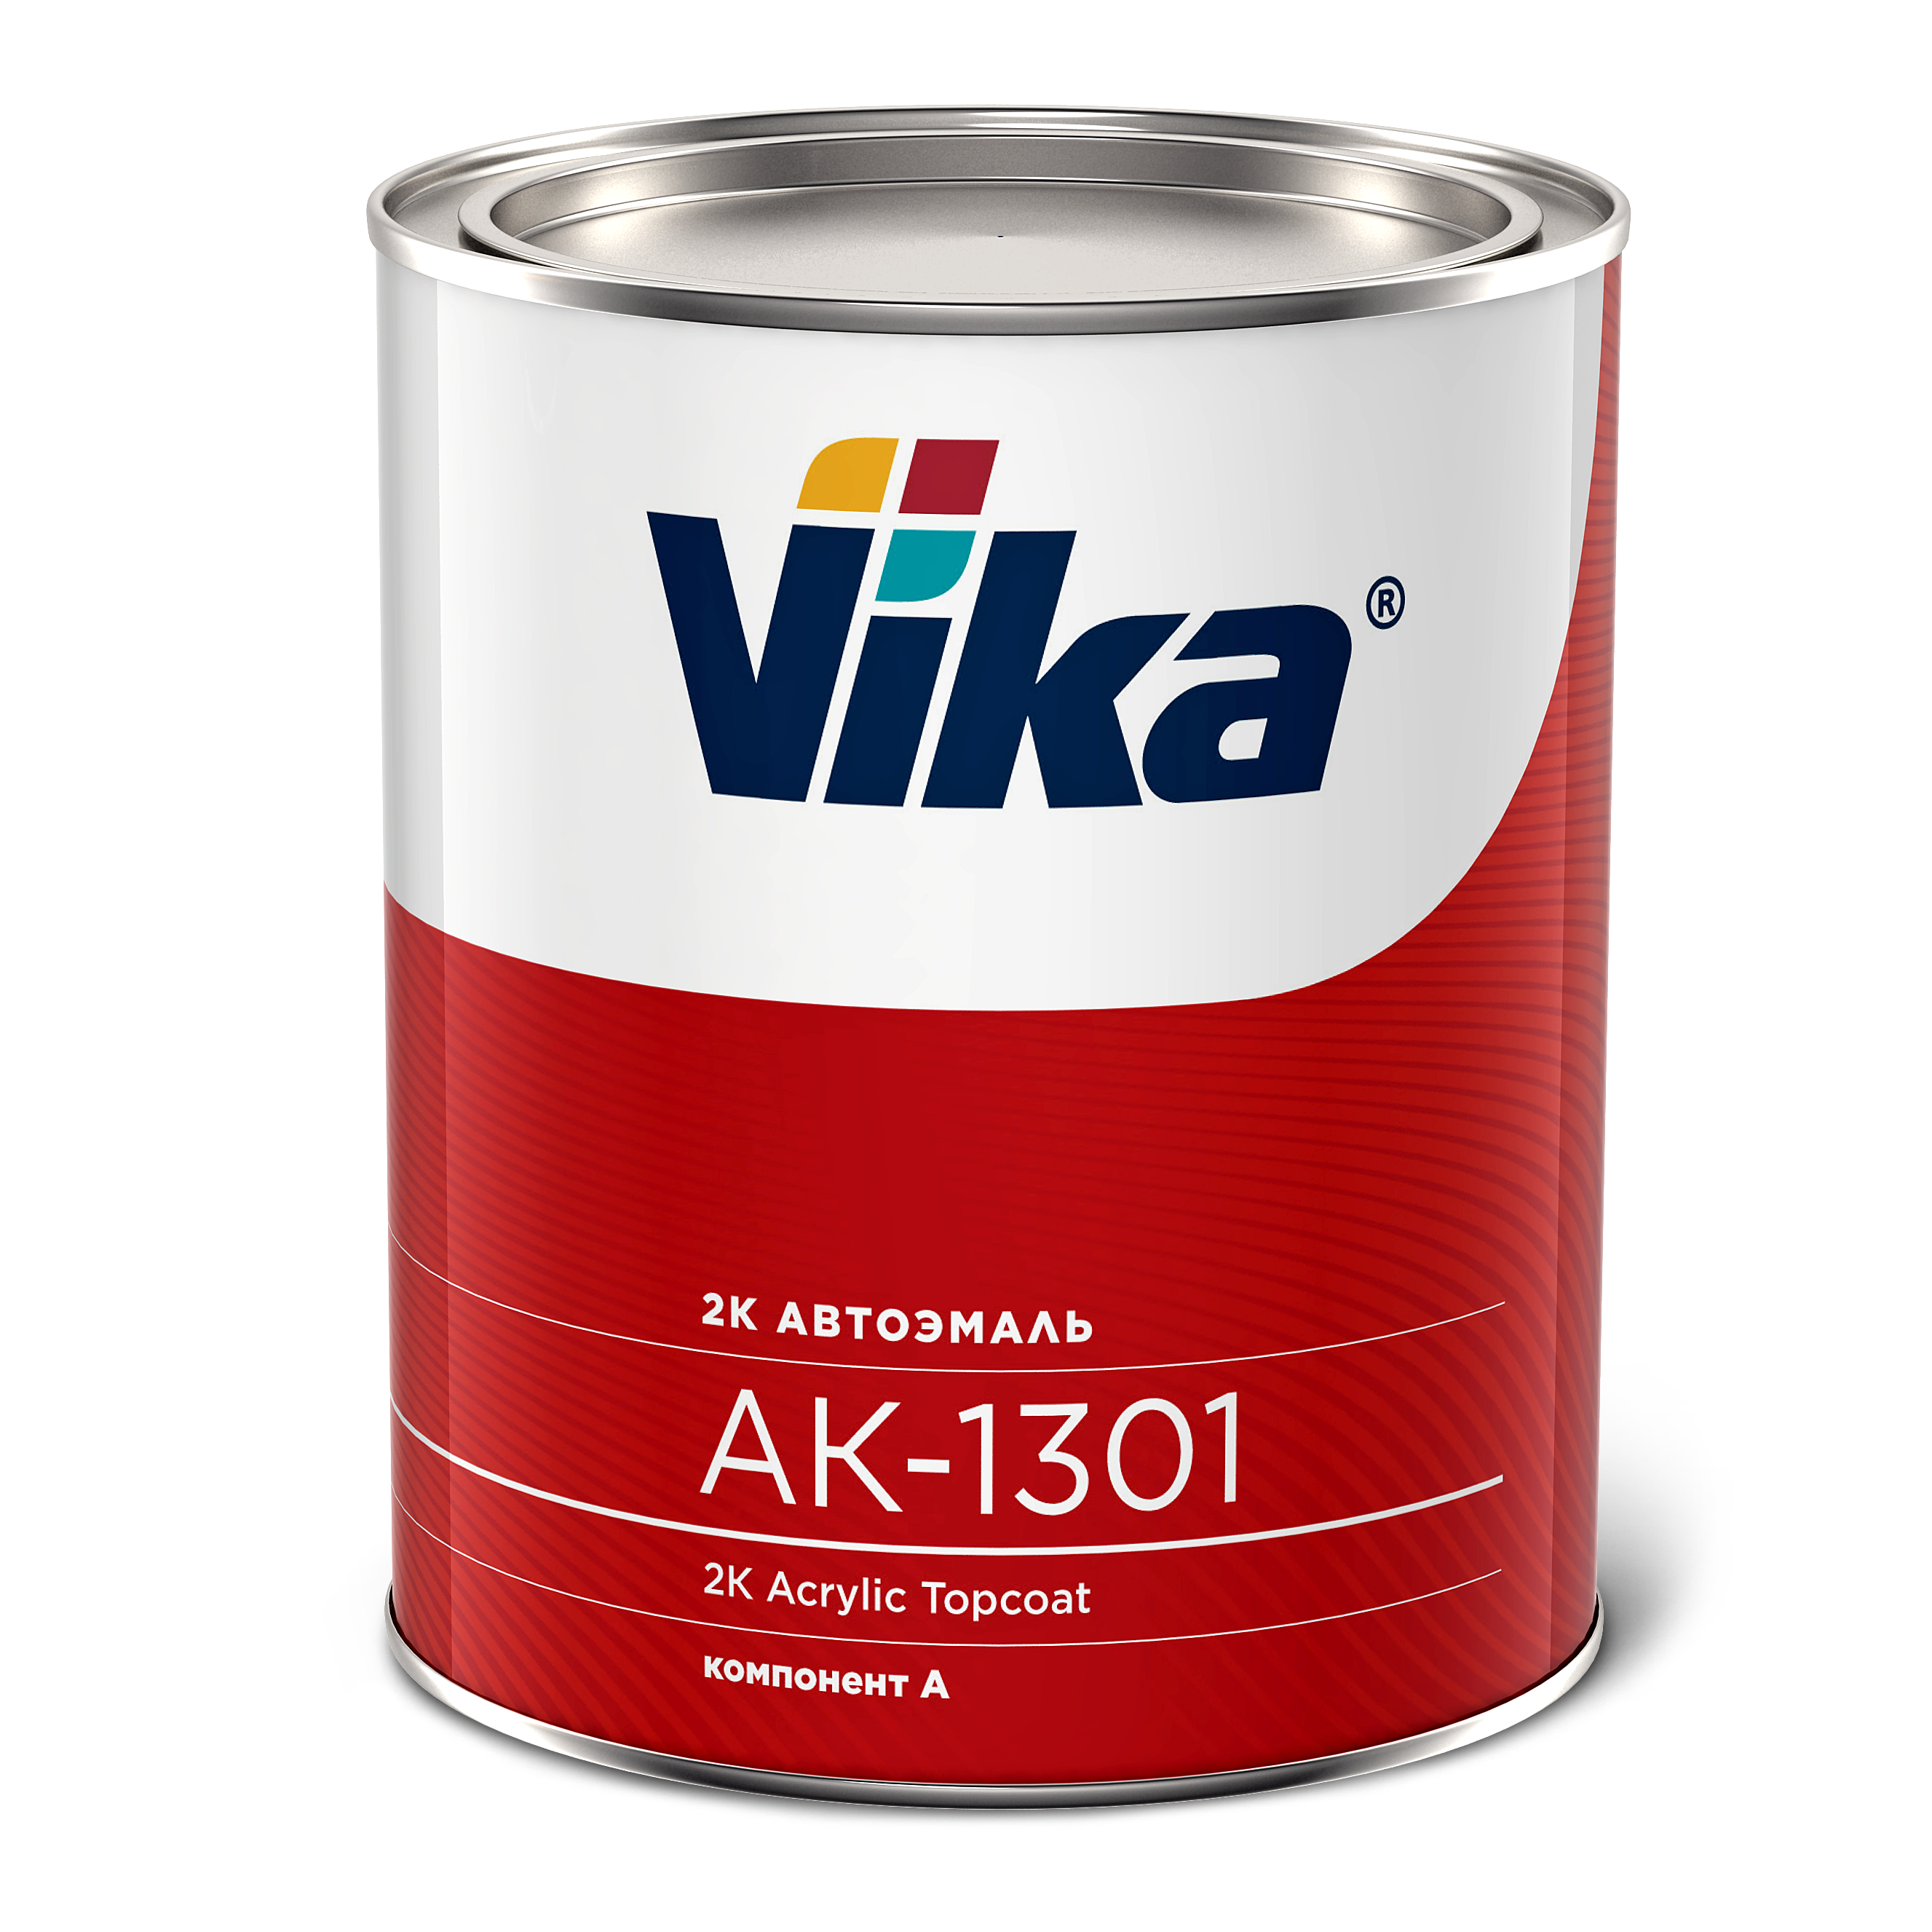 Купить краску вика. Эмаль акриловая Vika АК-1301, оранжевая 121. Автоэмаль акриловая Vika АК-1301. Эмаль Vika алкид (Vika-60) белая 202 0.8 кг. Краска акрил Vika AK-1301.